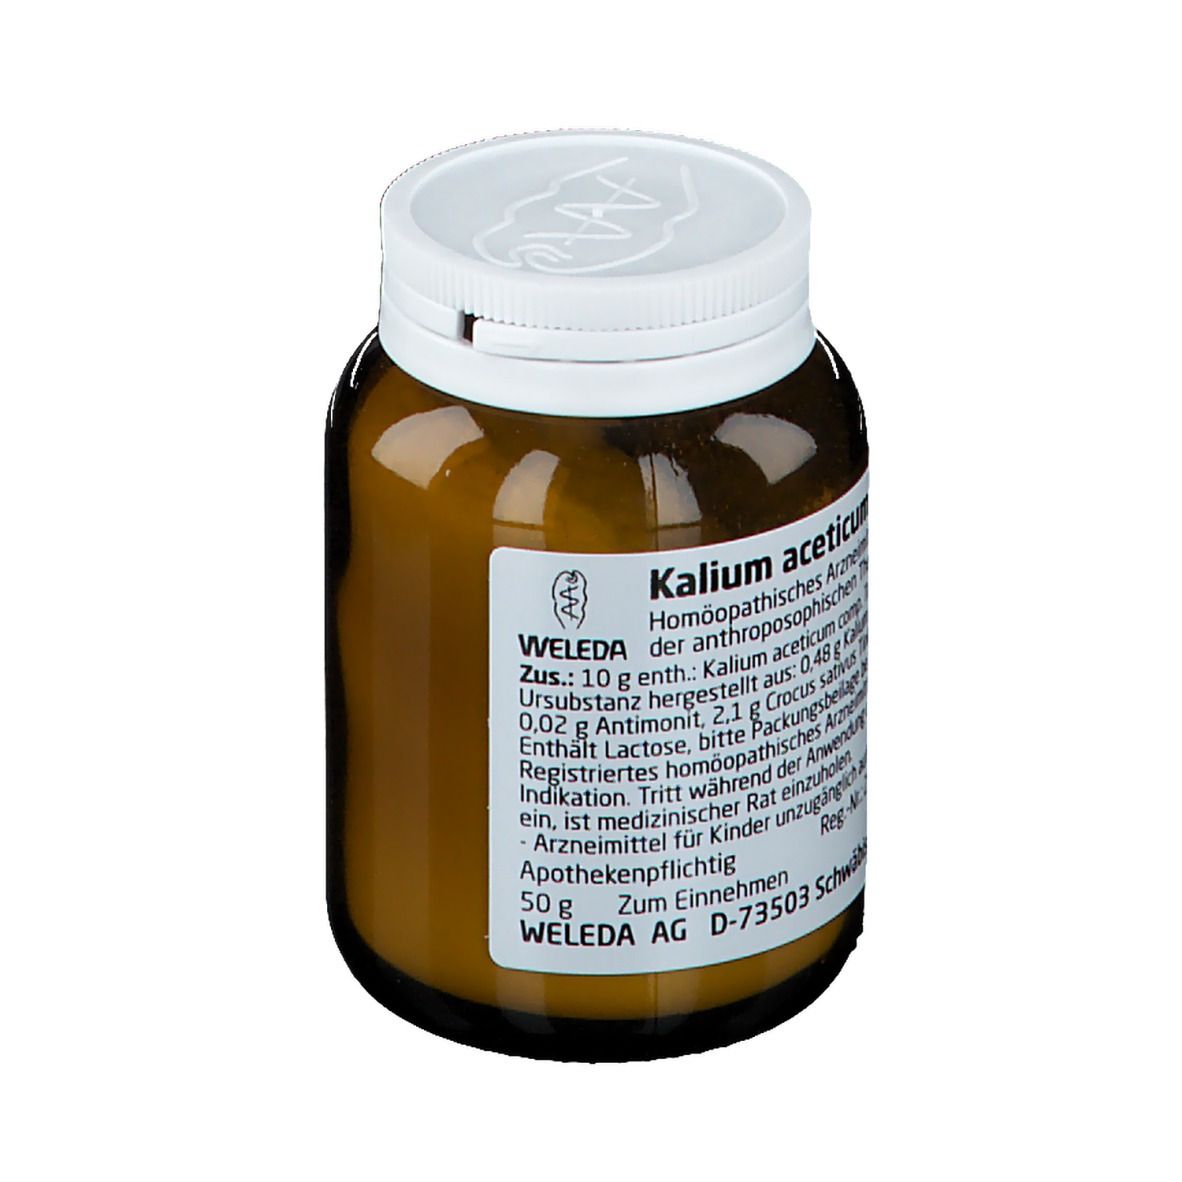 Kalium Acetic. Comp. D6 Trituration